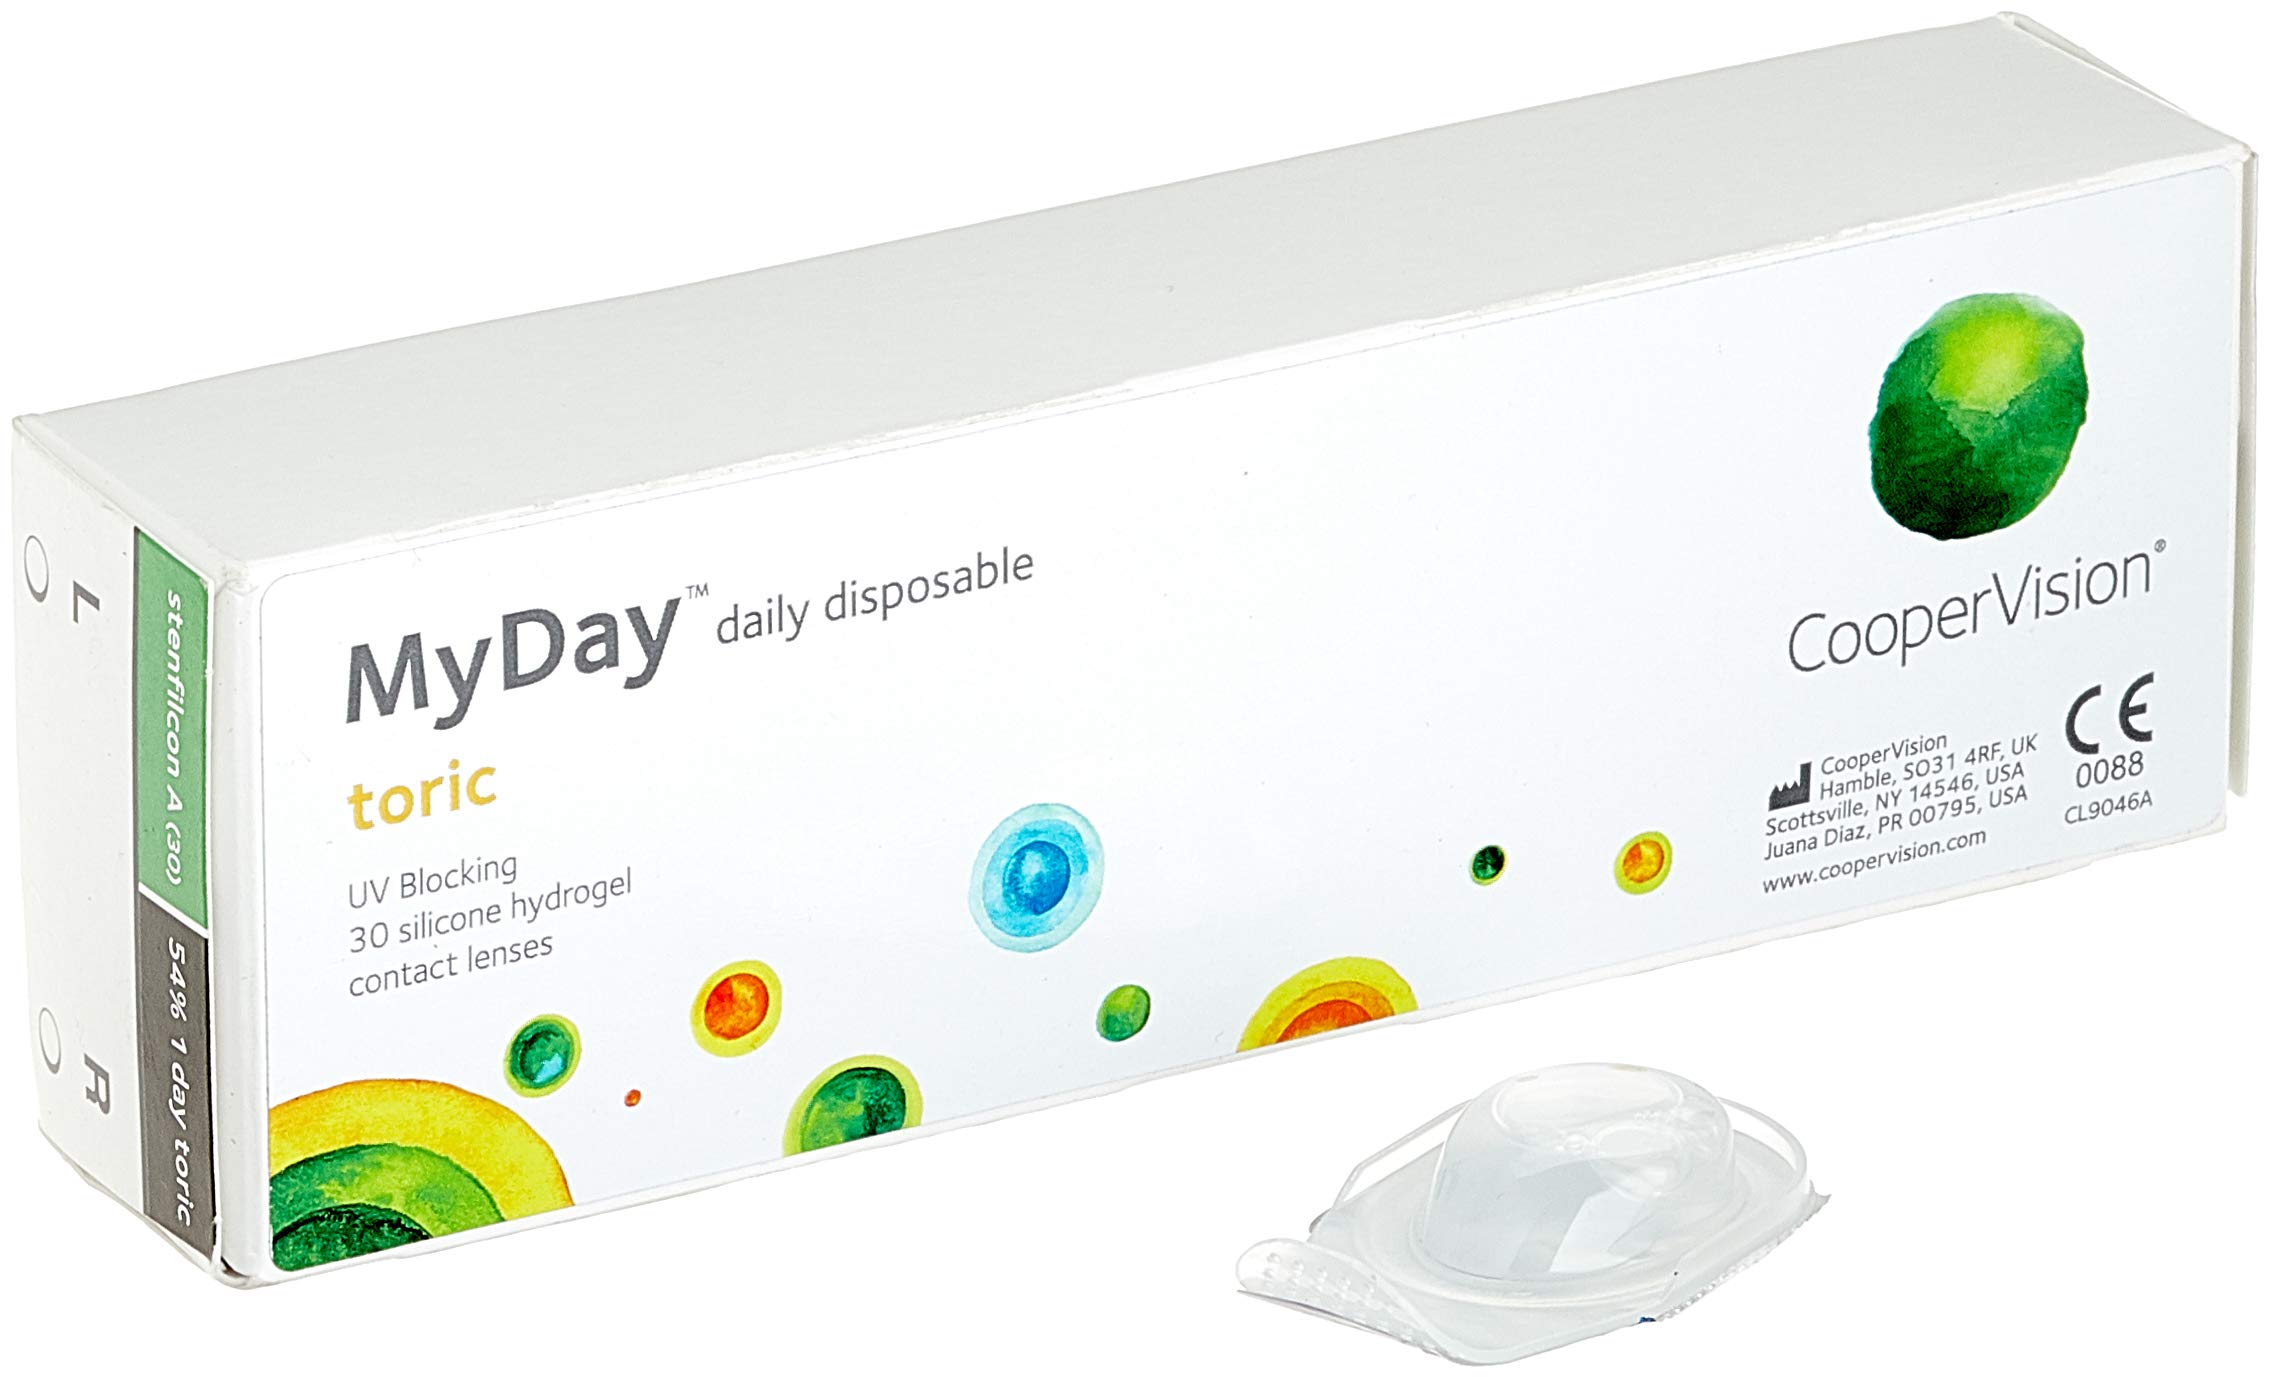 MYDAY Daily disposable Torisch Tageslinsen weich, 30 Stück / BC 8.6 mm / Dia 14.5 mm / CYL -0,75 / ACHSE 70 / -0.75 Dioptrien